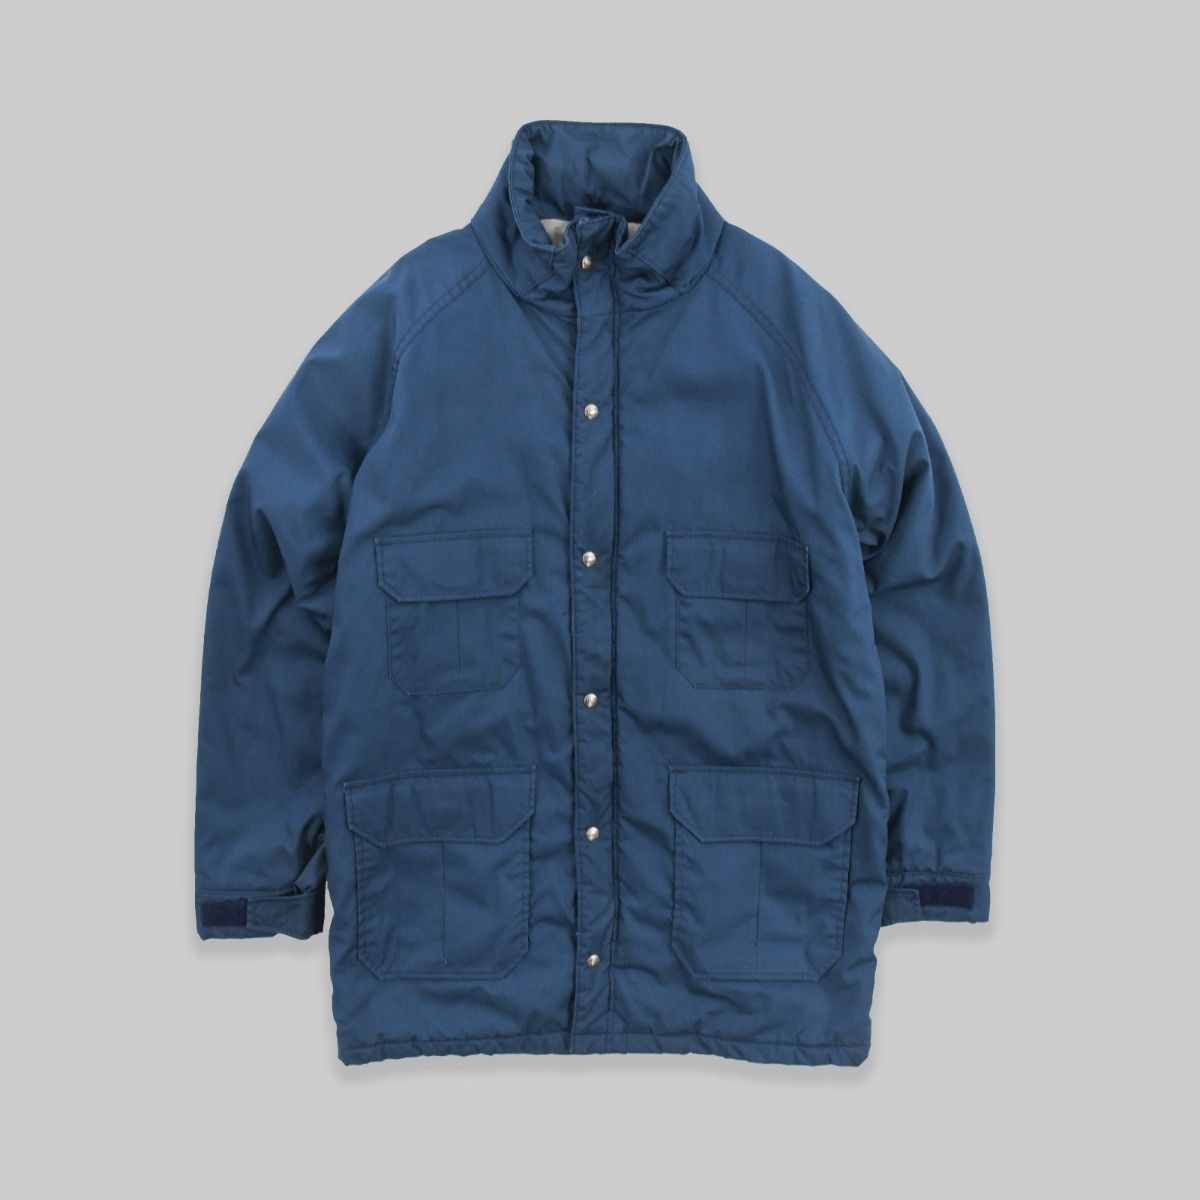 Woolrich 1980s Blue Zipup Jacket